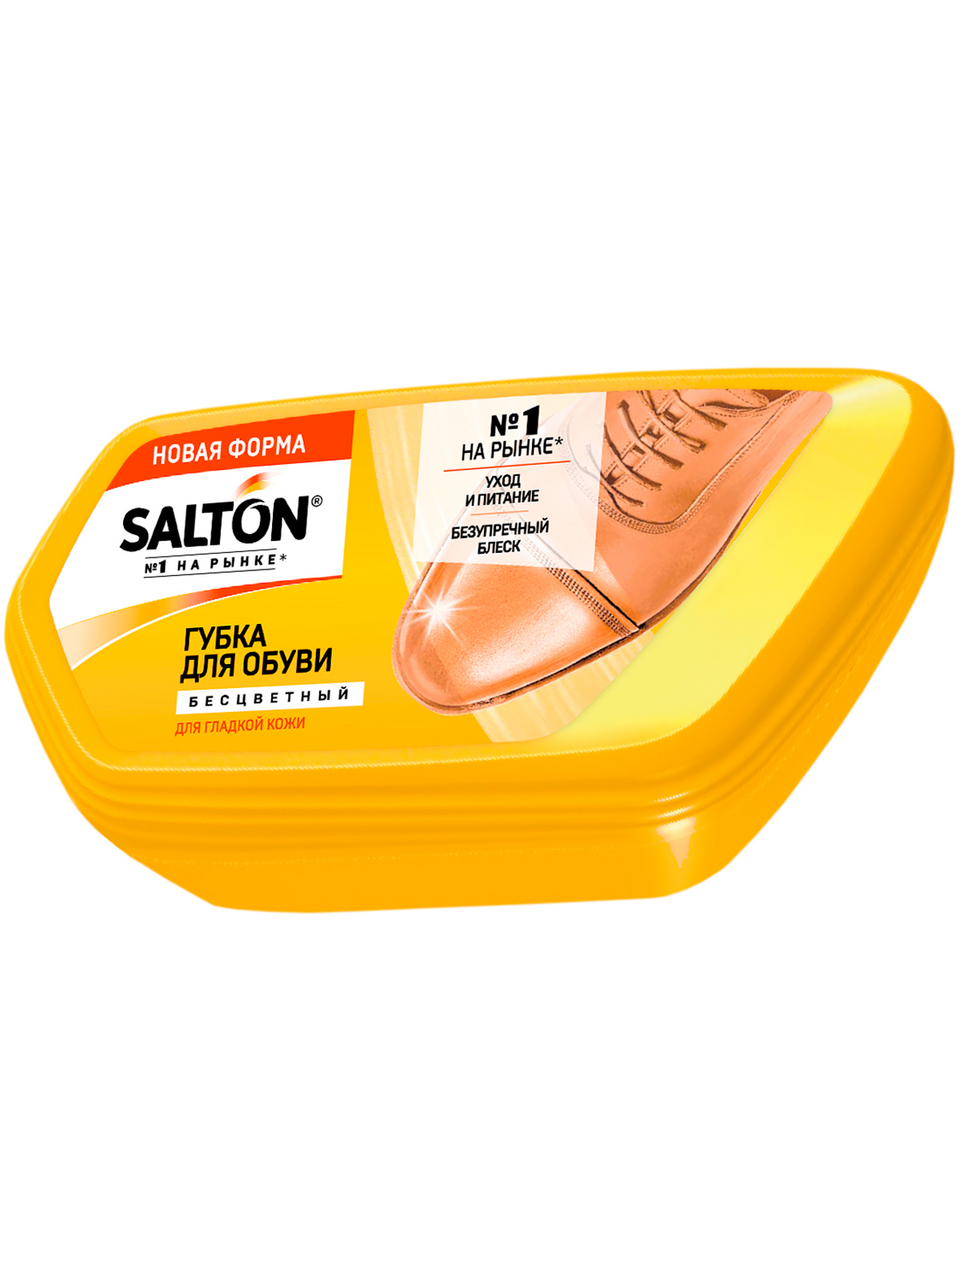  для обуви из гладкой кожи Salton бесцветная, 53мл  с .